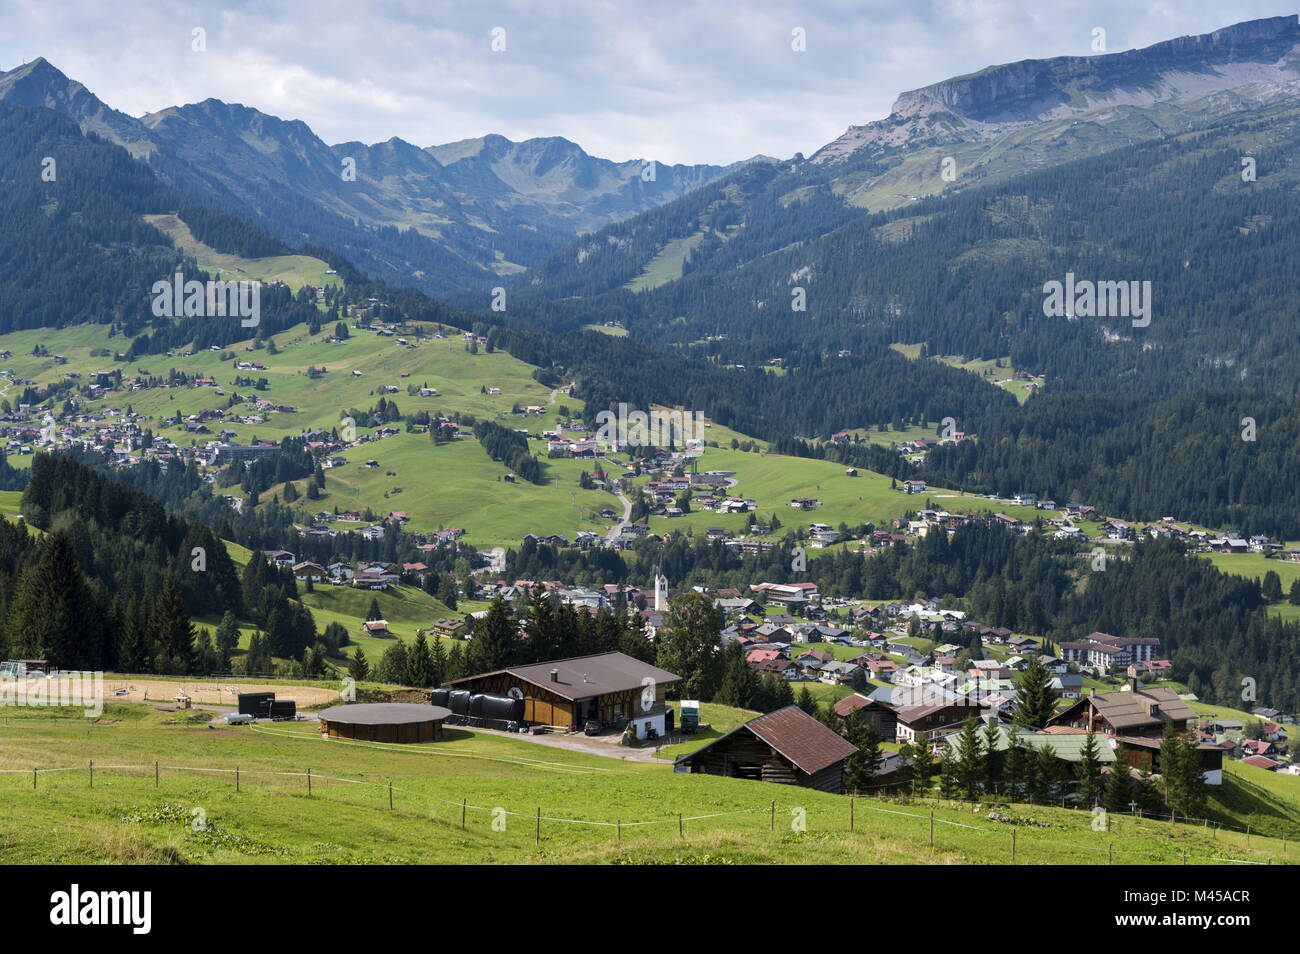 Con vistas a la aldea de Riezlern Kleinwalsertal Foto de stock